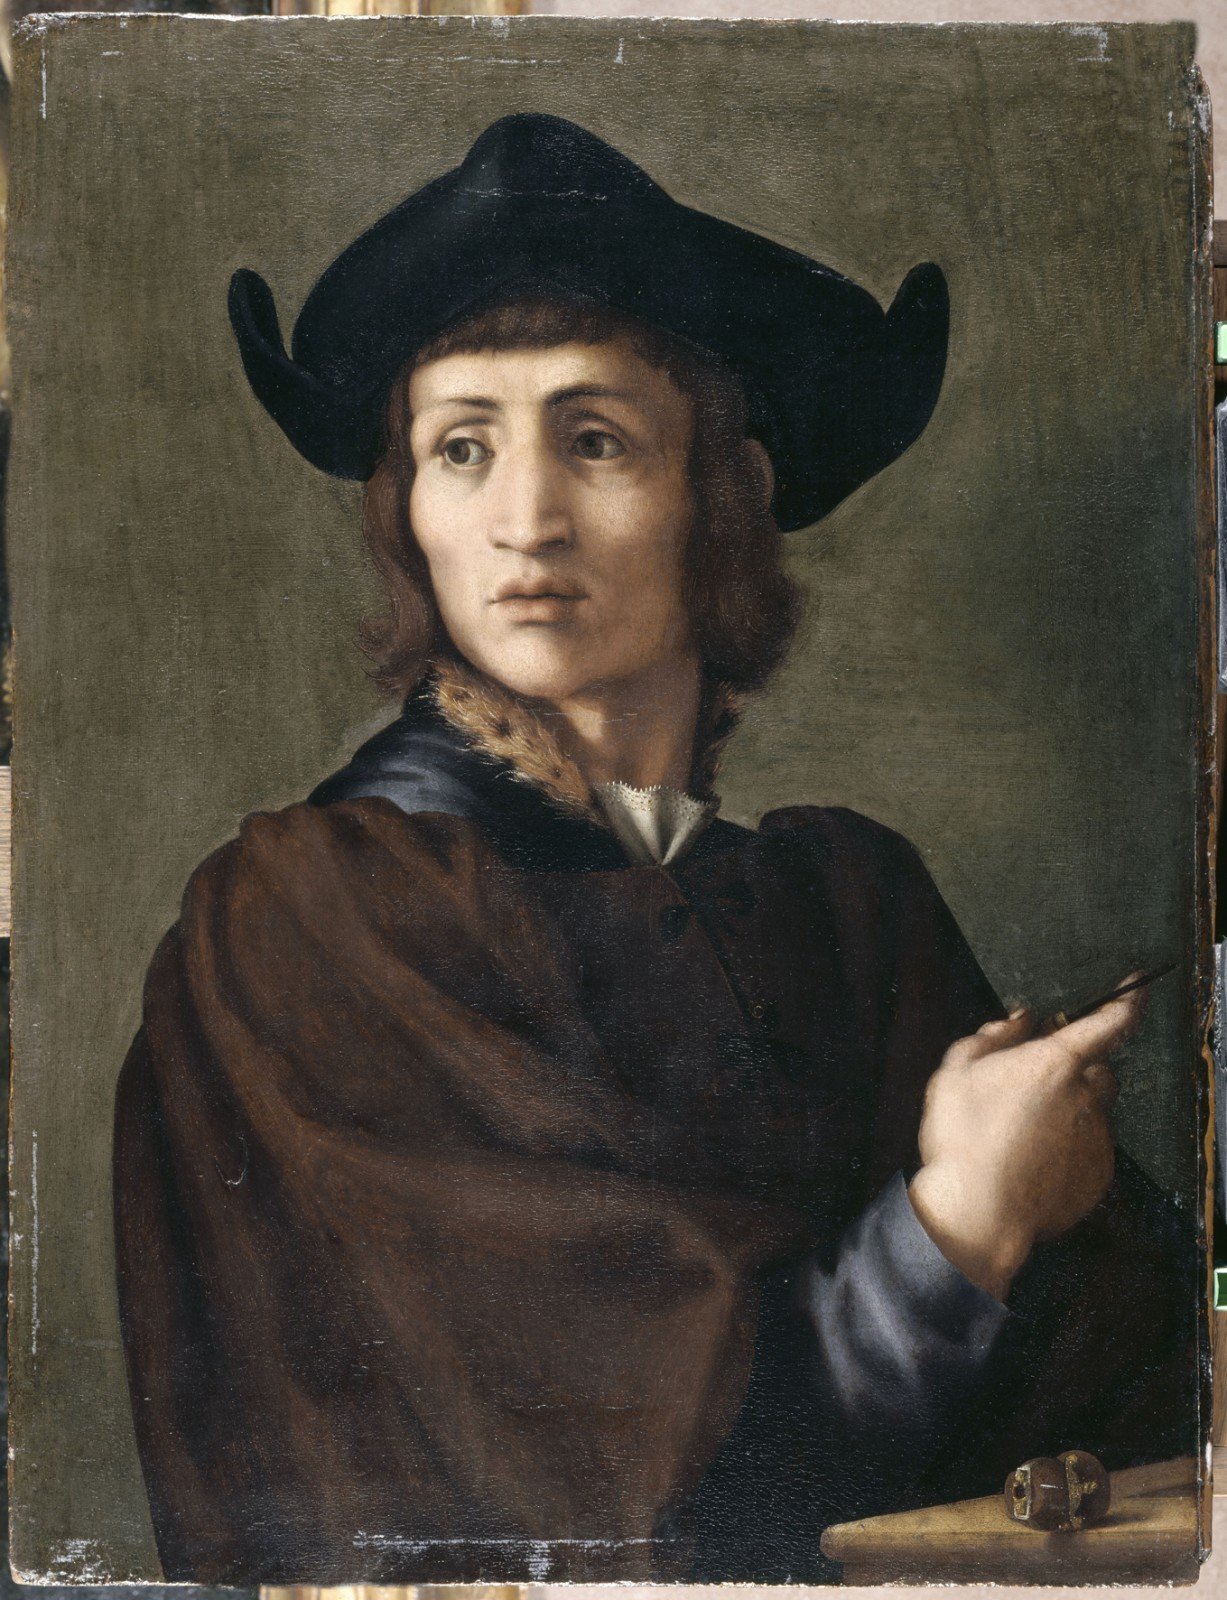 Pontormo (Jacopo Carucci; Pontorme, Empoli 1494 - Florence 1557), "Portrait of a Goldsmith”, 1518, oil on panel, 70 x 53 cm. Paris, Musée du Louvre - département des Peintures.